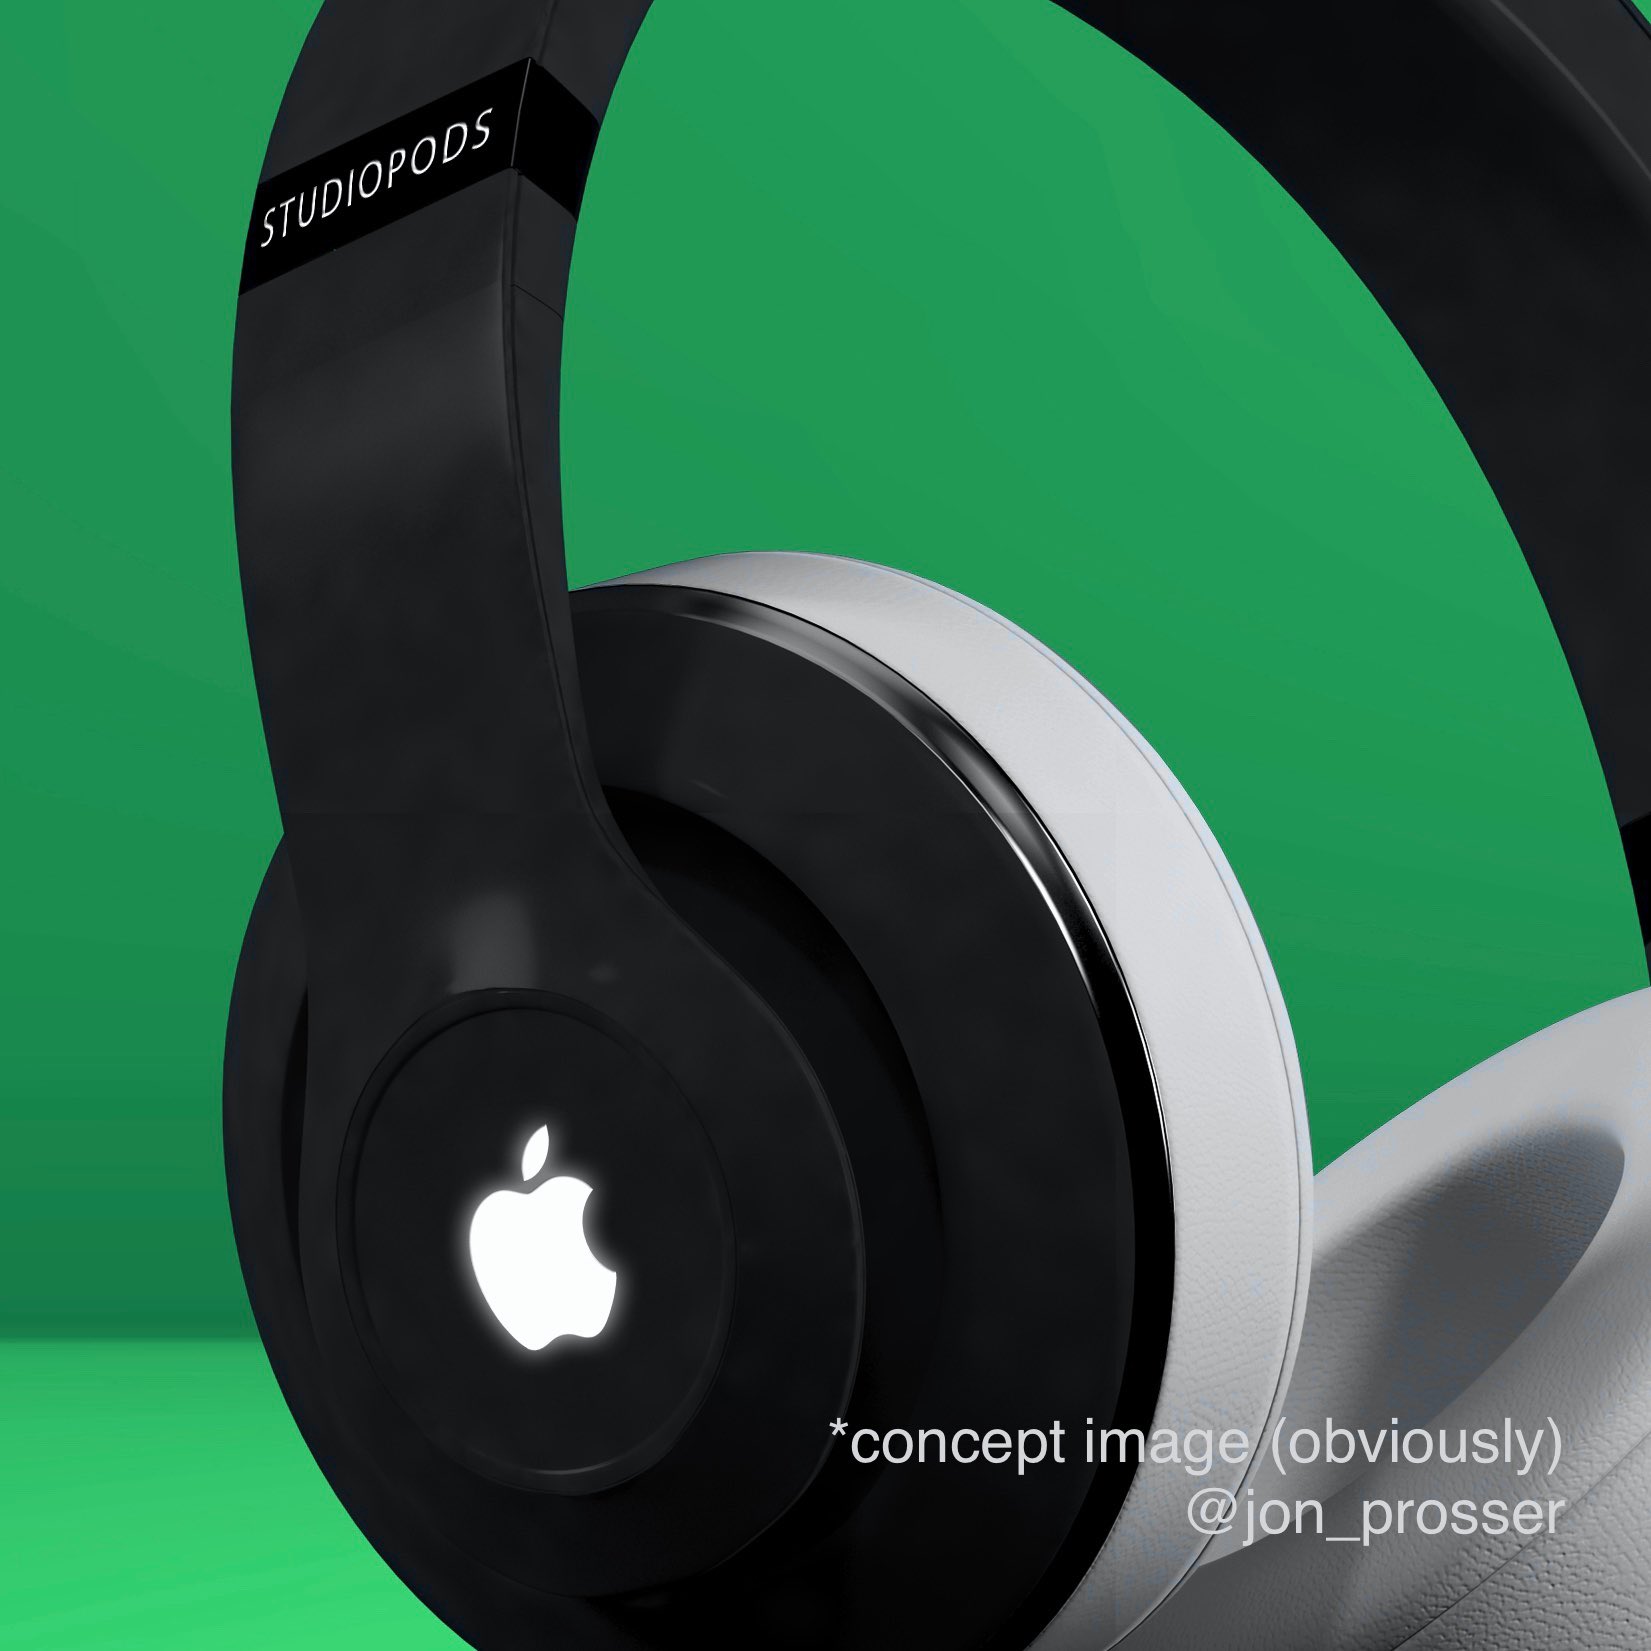 Appleのオーバーイヤー型ヘッドフォンの発売は近い?? − ｢AirPods (X Generation)｣というデバイスが量販店のシステムに登場